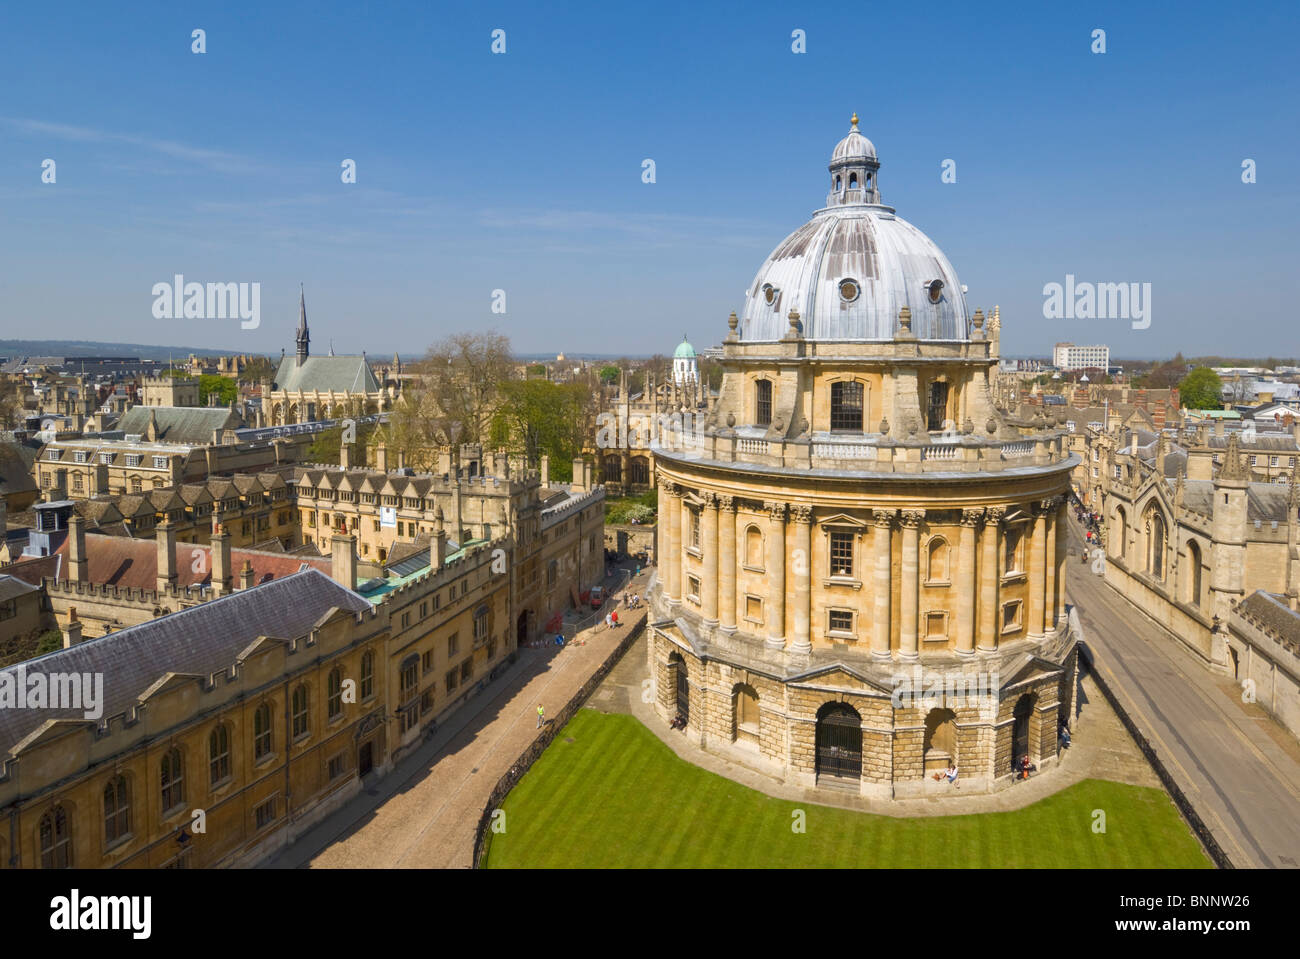 Oxford University Radcliffe caméra avec les murs de Brasenose College et les toits de l'Université d'Oxford, Oxfordshire, Angleterre, Royaume-Uni, GB Europe Banque D'Images